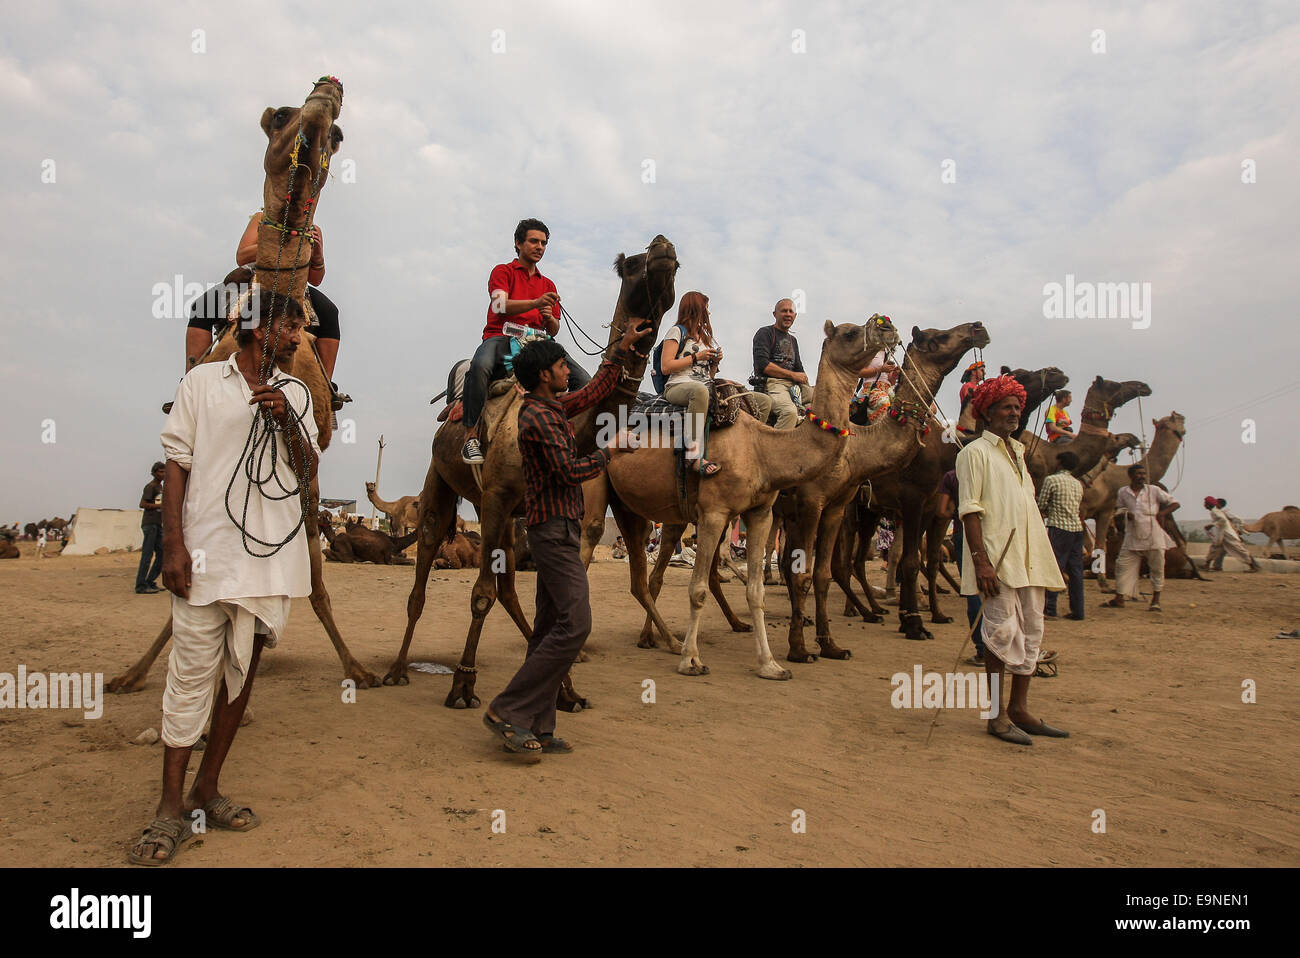 Le Rajasthan, Inde. 30Th Oct, 2014. Les touristes monter sur des chameaux dans un marché aux chameaux, le jour avant le Festival du chameau à Pushkar, Inde du Rajasthan, le 30 octobre 2014. Source : Xinhua/Alamy Live News Banque D'Images